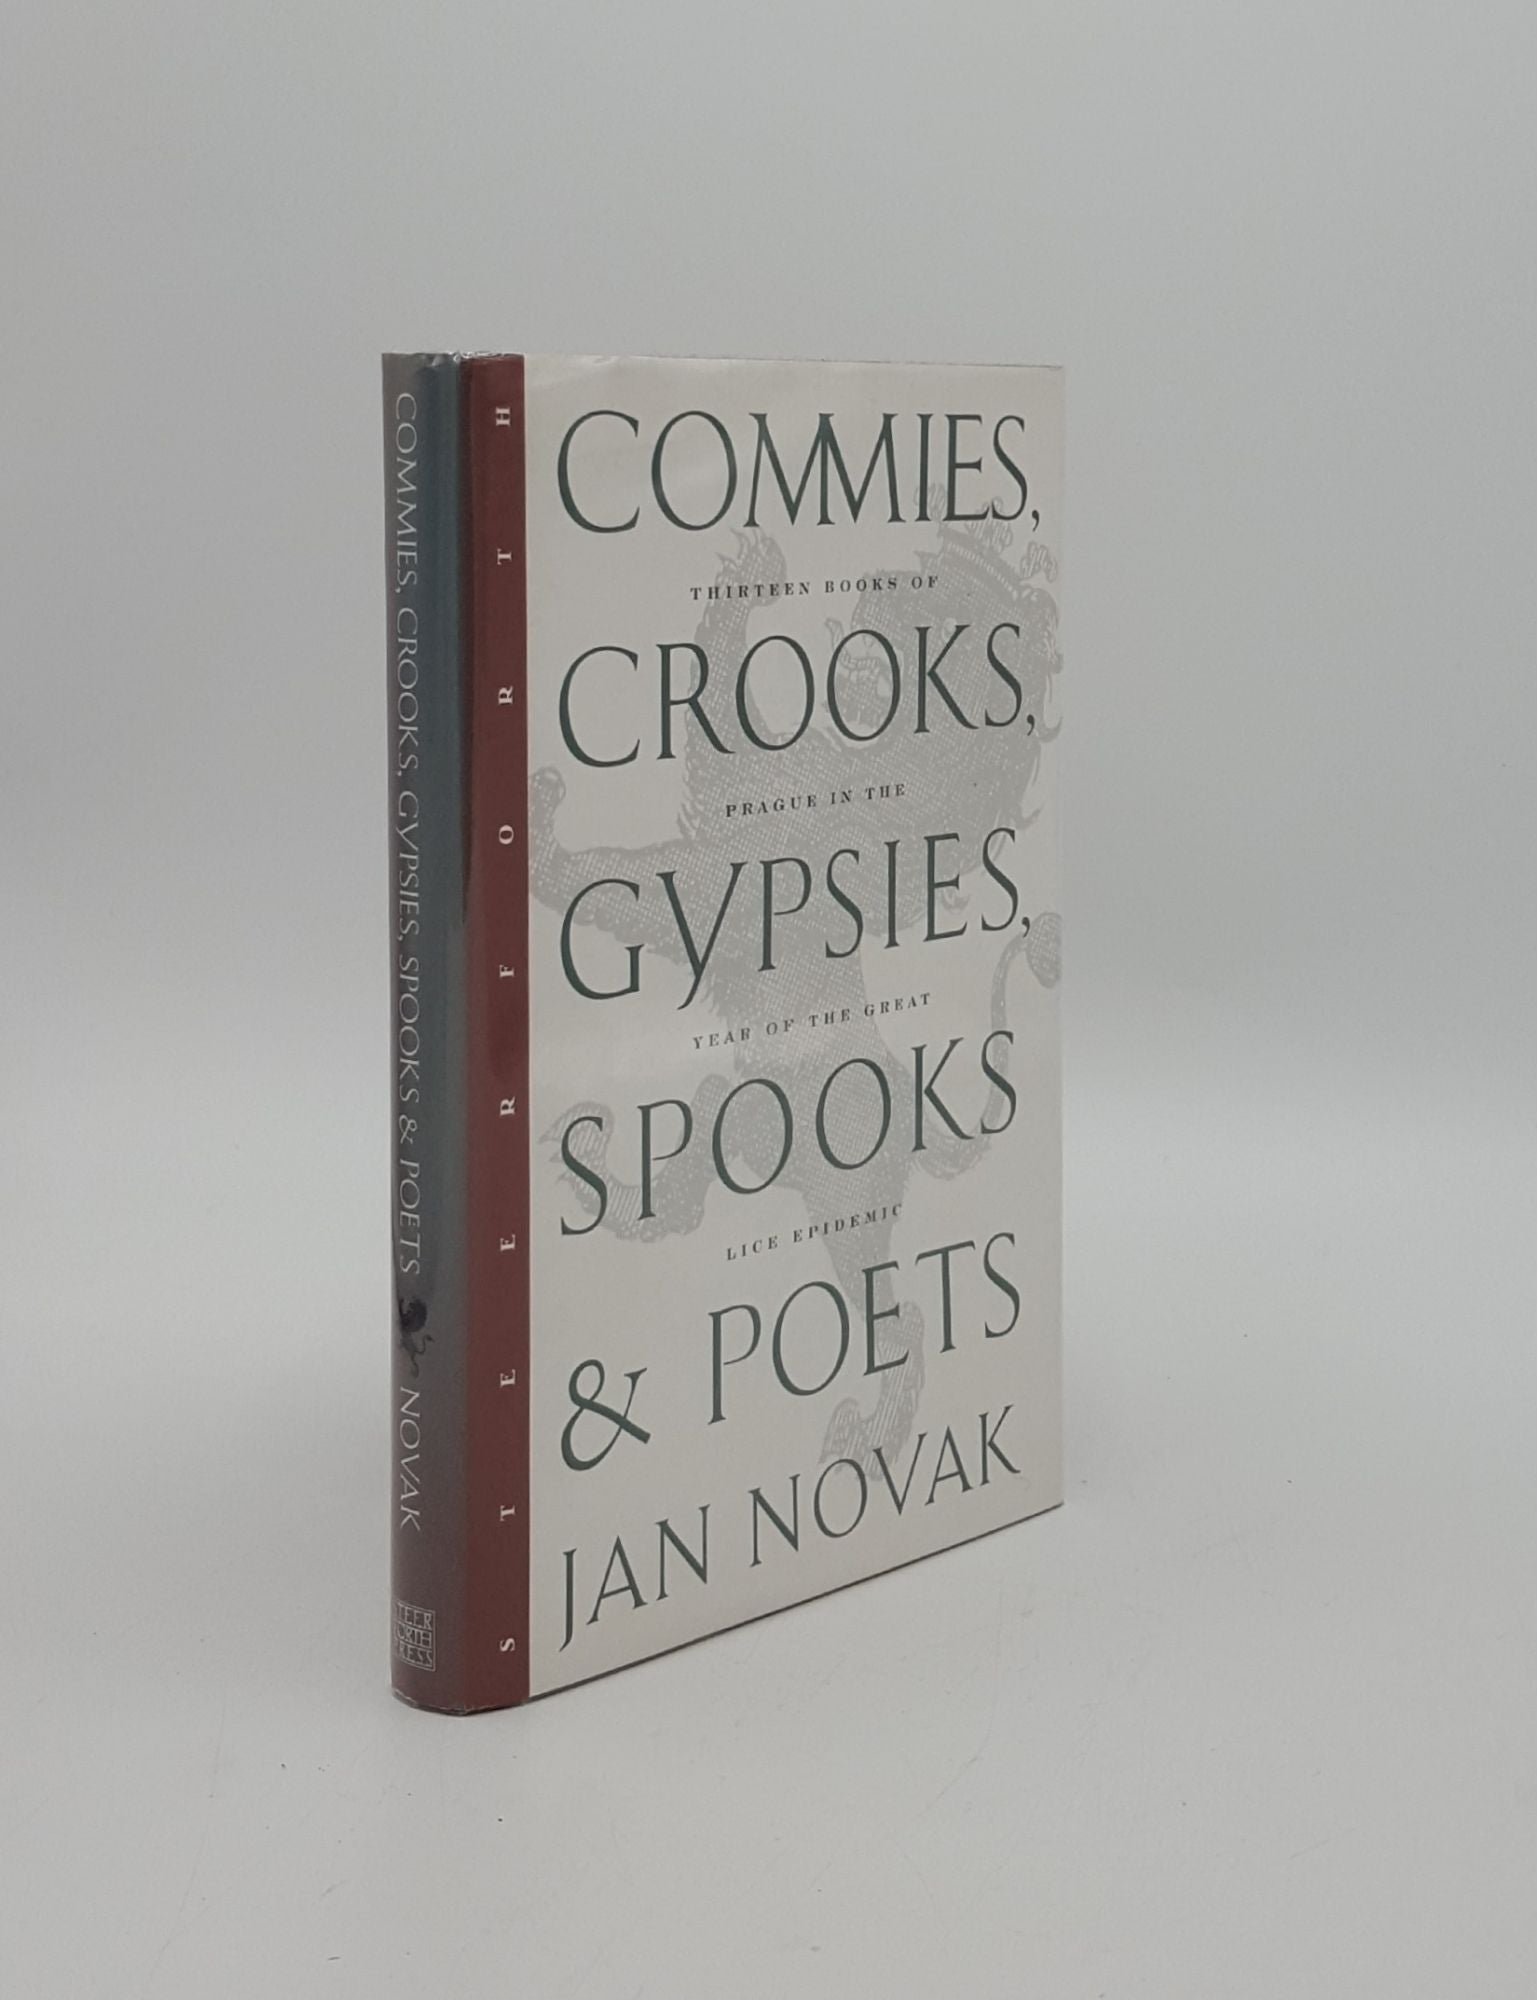 NOVAK Jan - Commies Crooks Gypsies Spooks & Poets